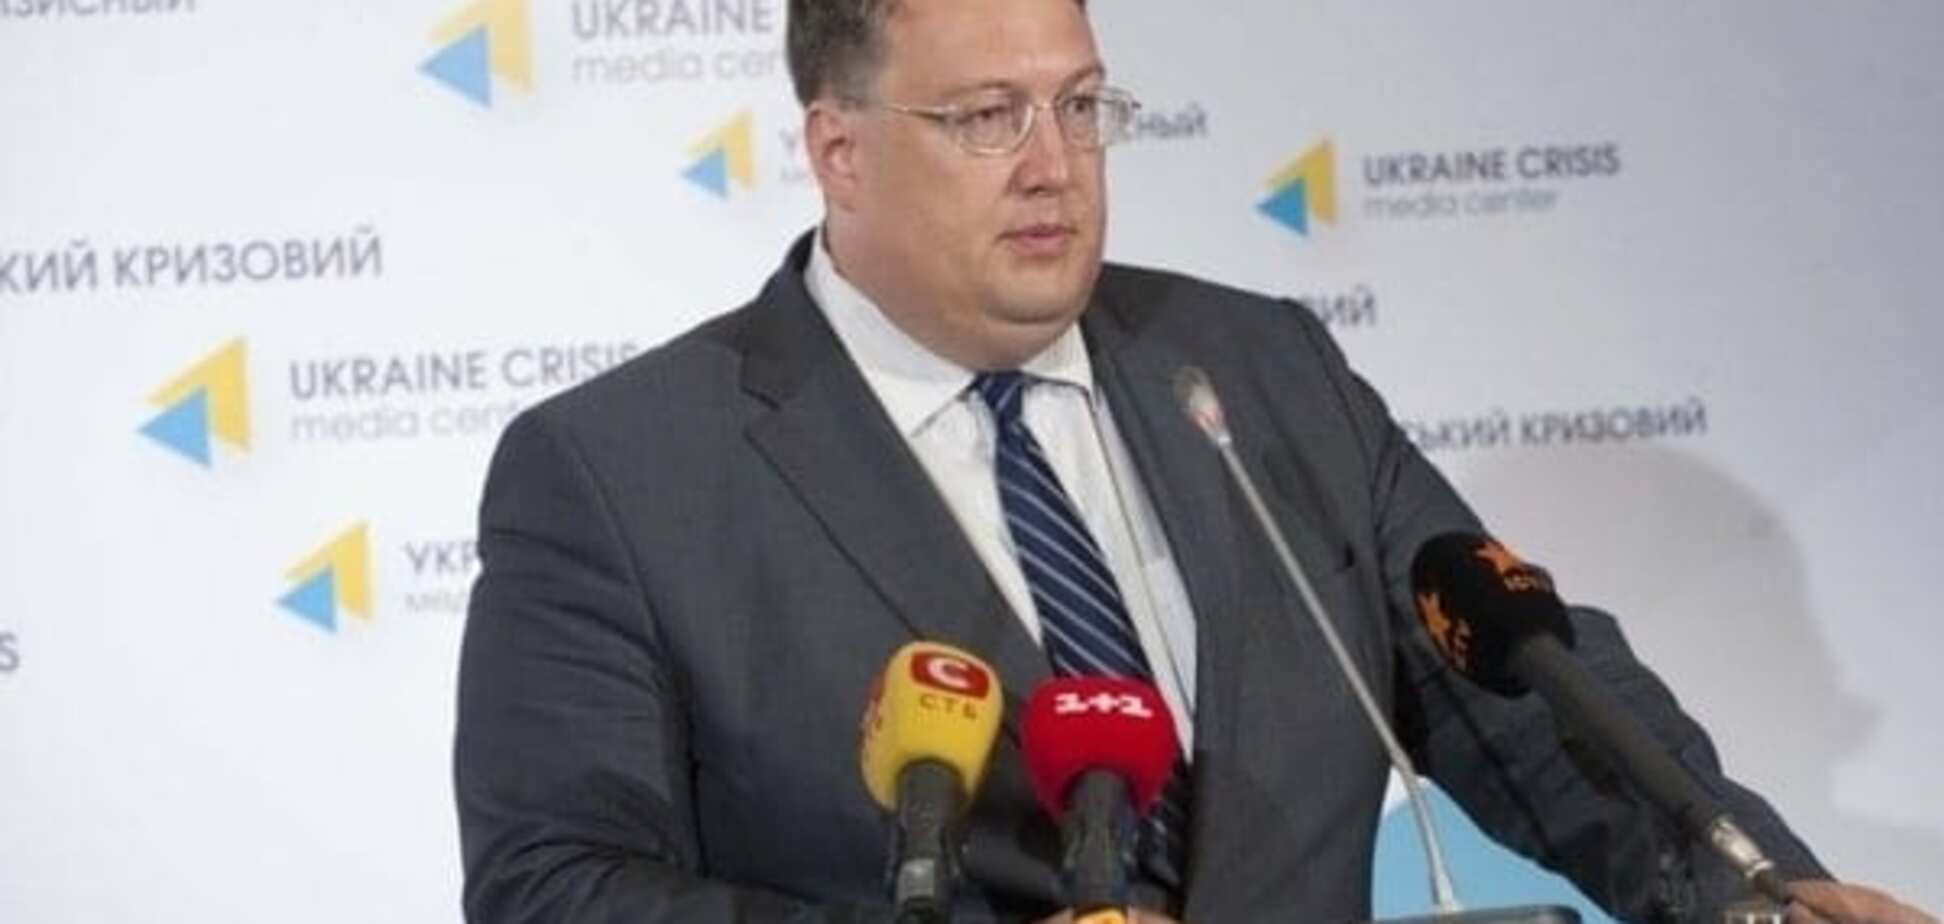 Геращенко: 'спецназ реформ' зможе зробити Україну передовою державою